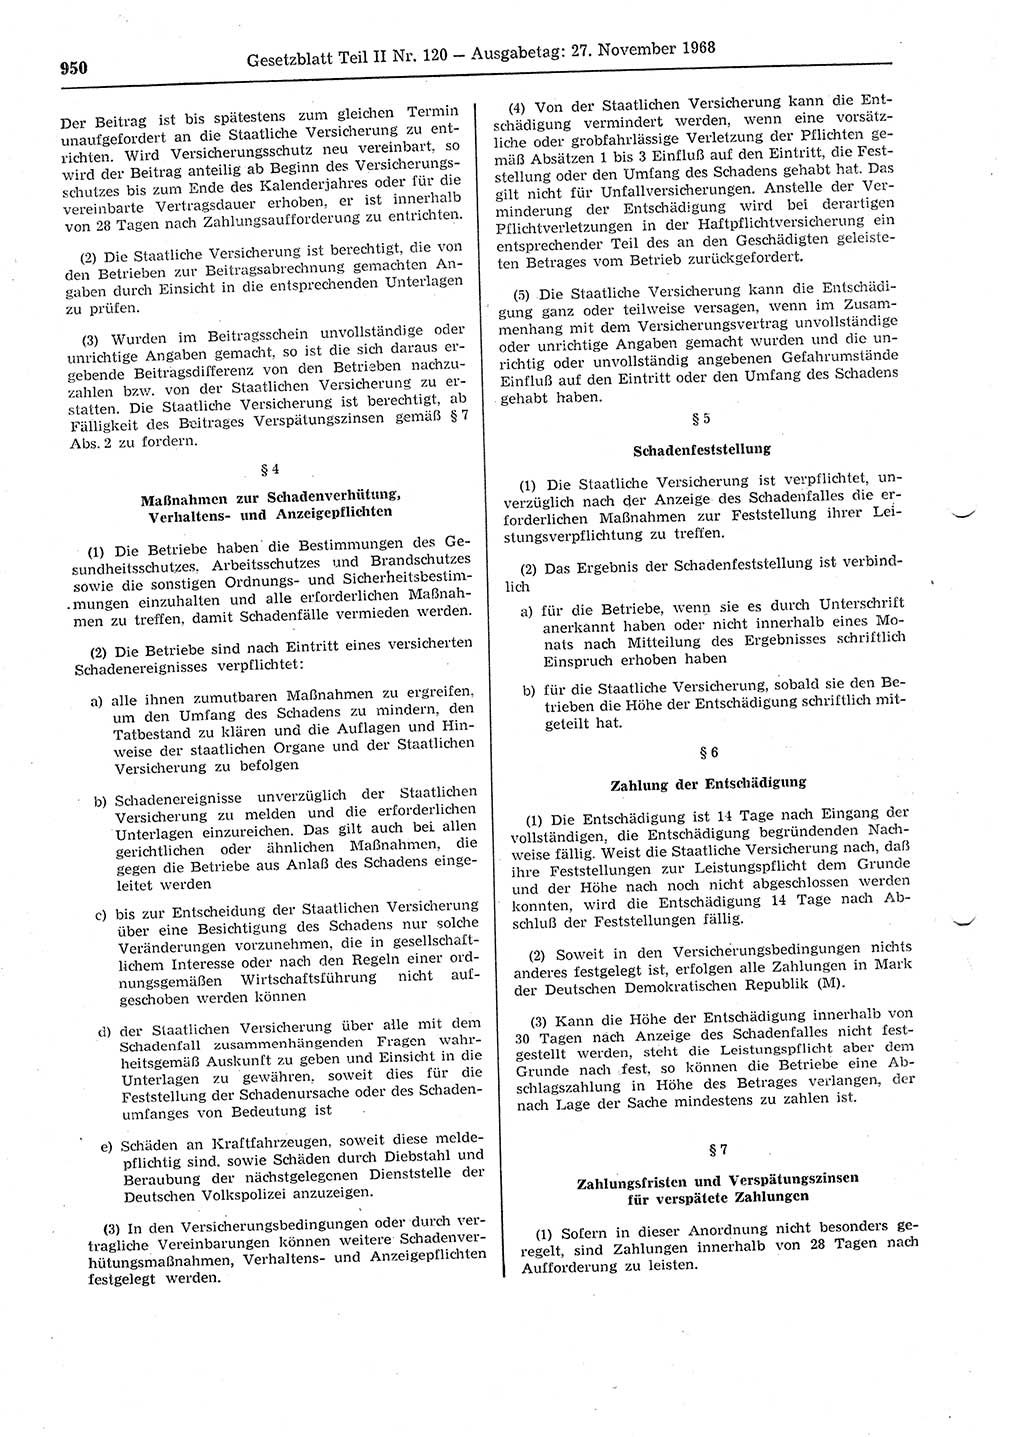 Gesetzblatt (GBl.) der Deutschen Demokratischen Republik (DDR) Teil ⅠⅠ 1968, Seite 950 (GBl. DDR ⅠⅠ 1968, S. 950)